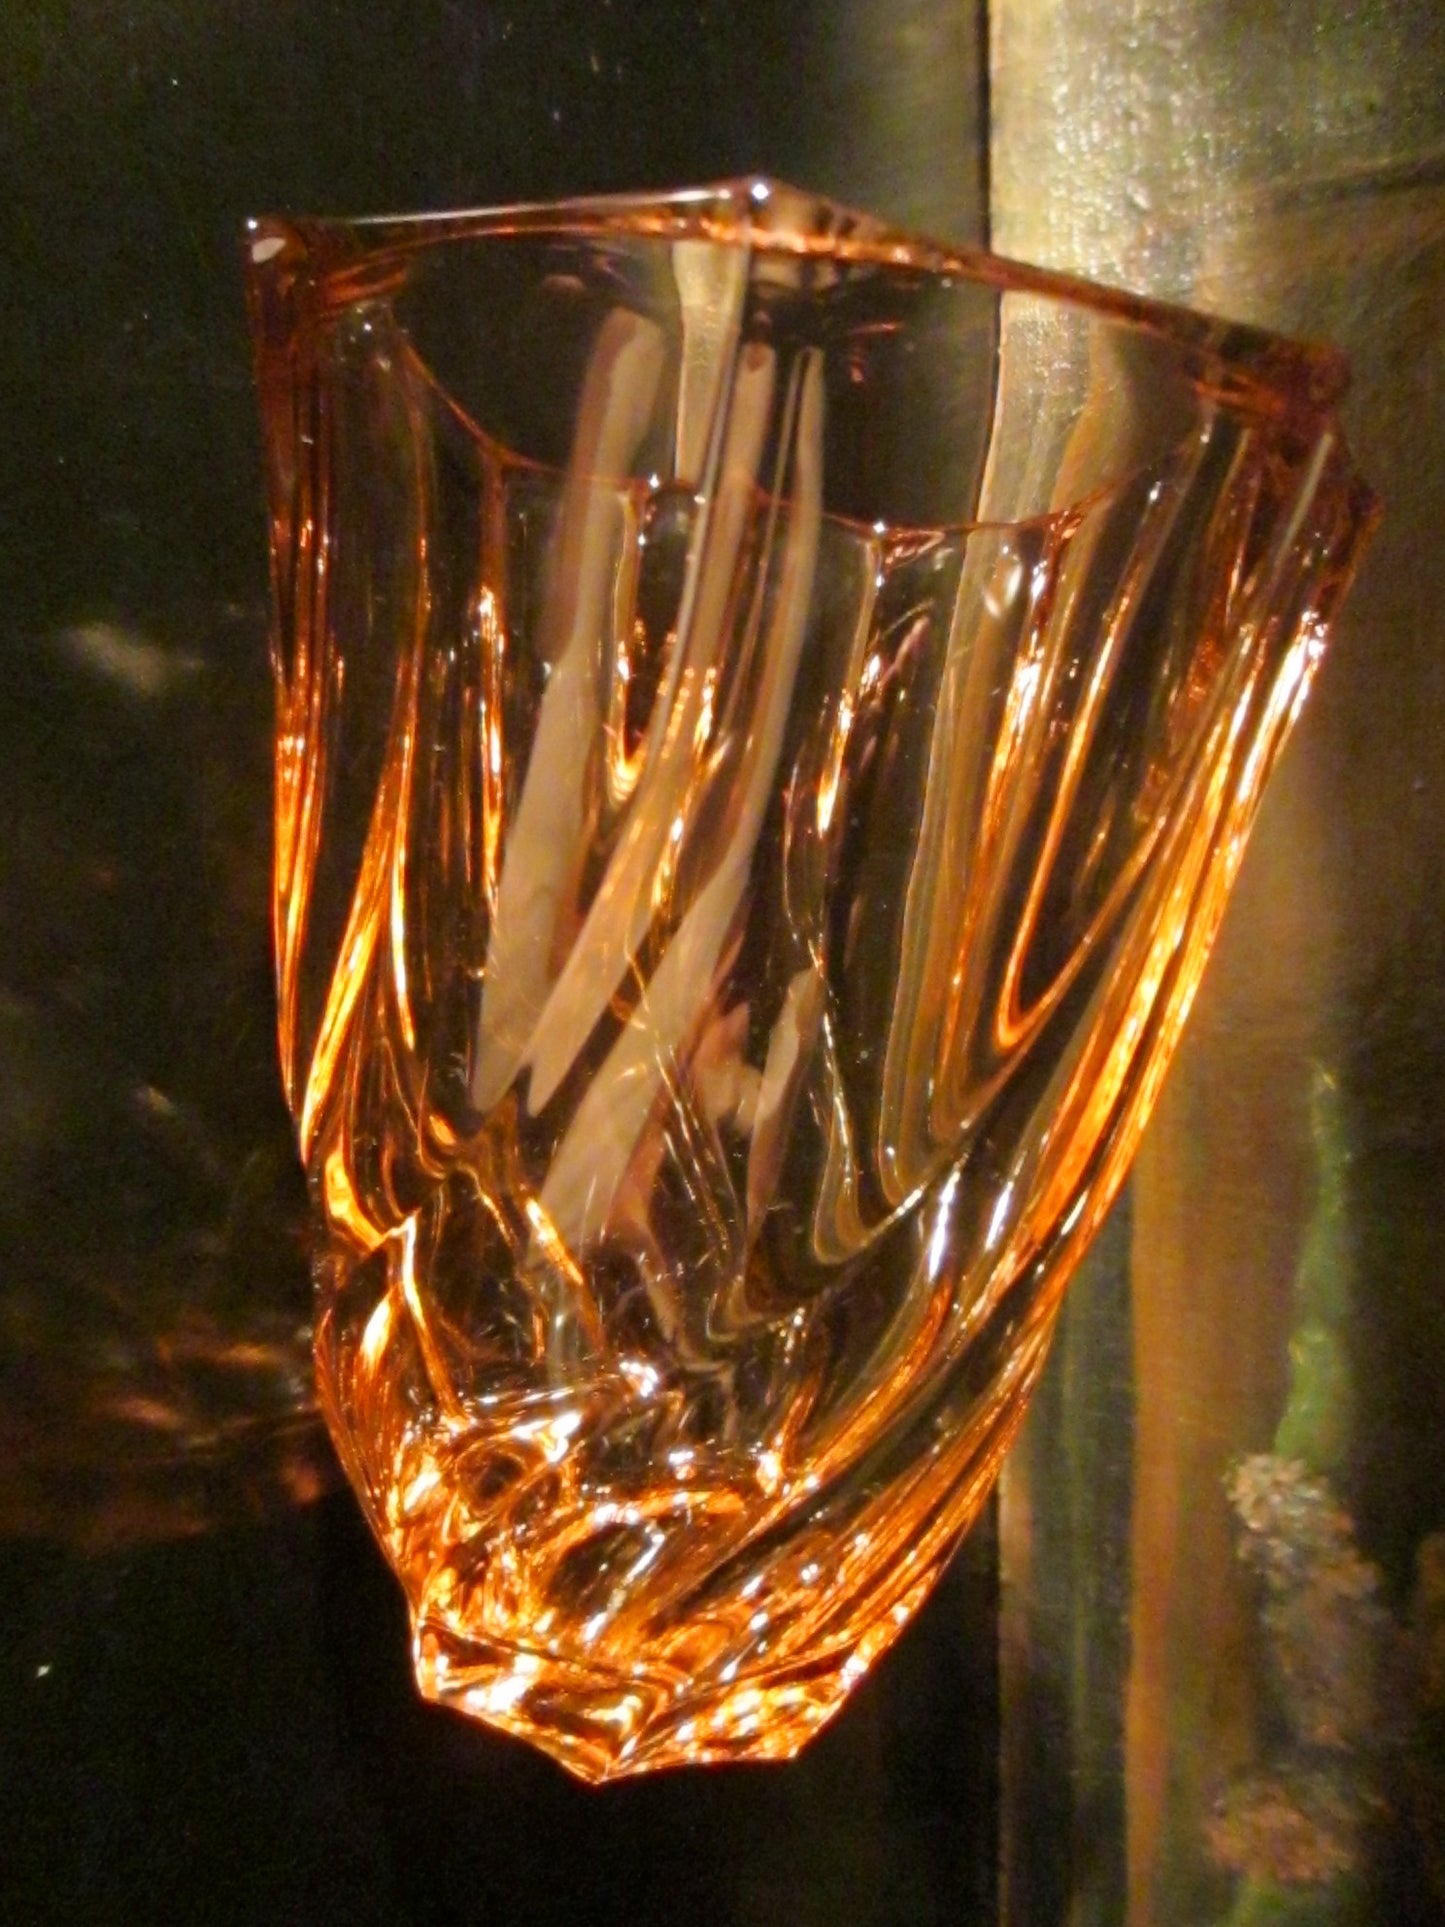 France Mid Century Champagne Glass Flower Vase - Designer Unique Finds 